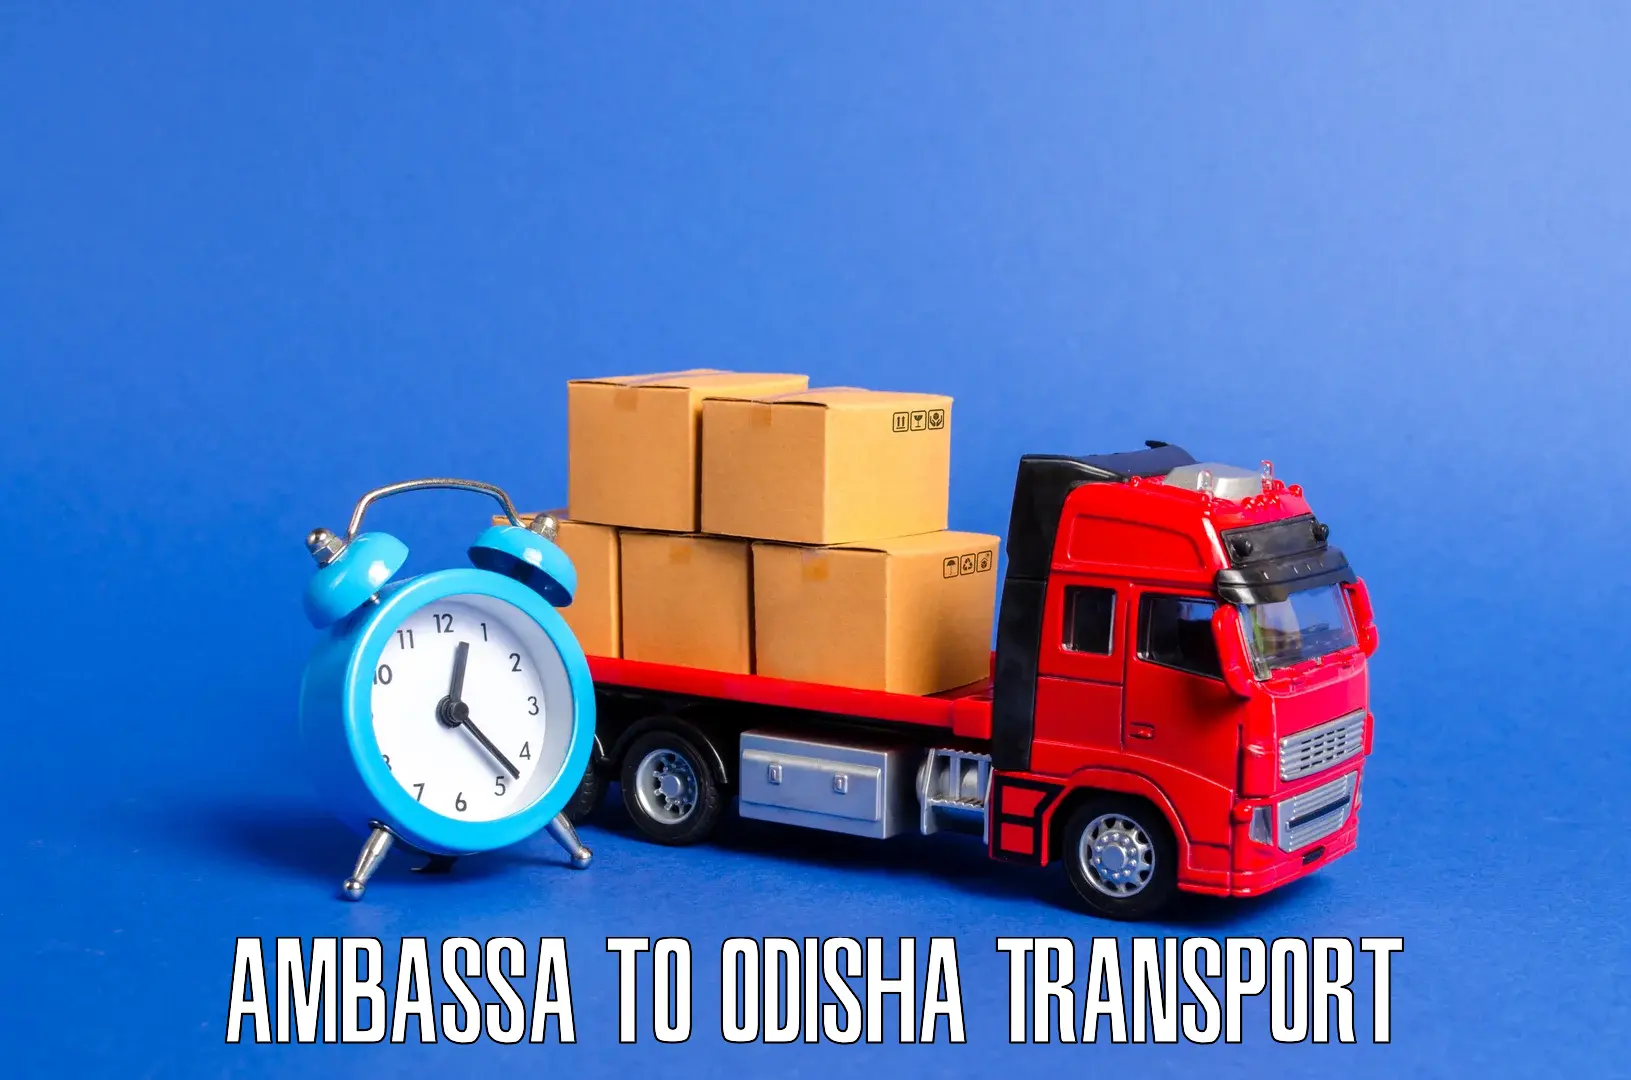 Nearest transport service Ambassa to Mathili